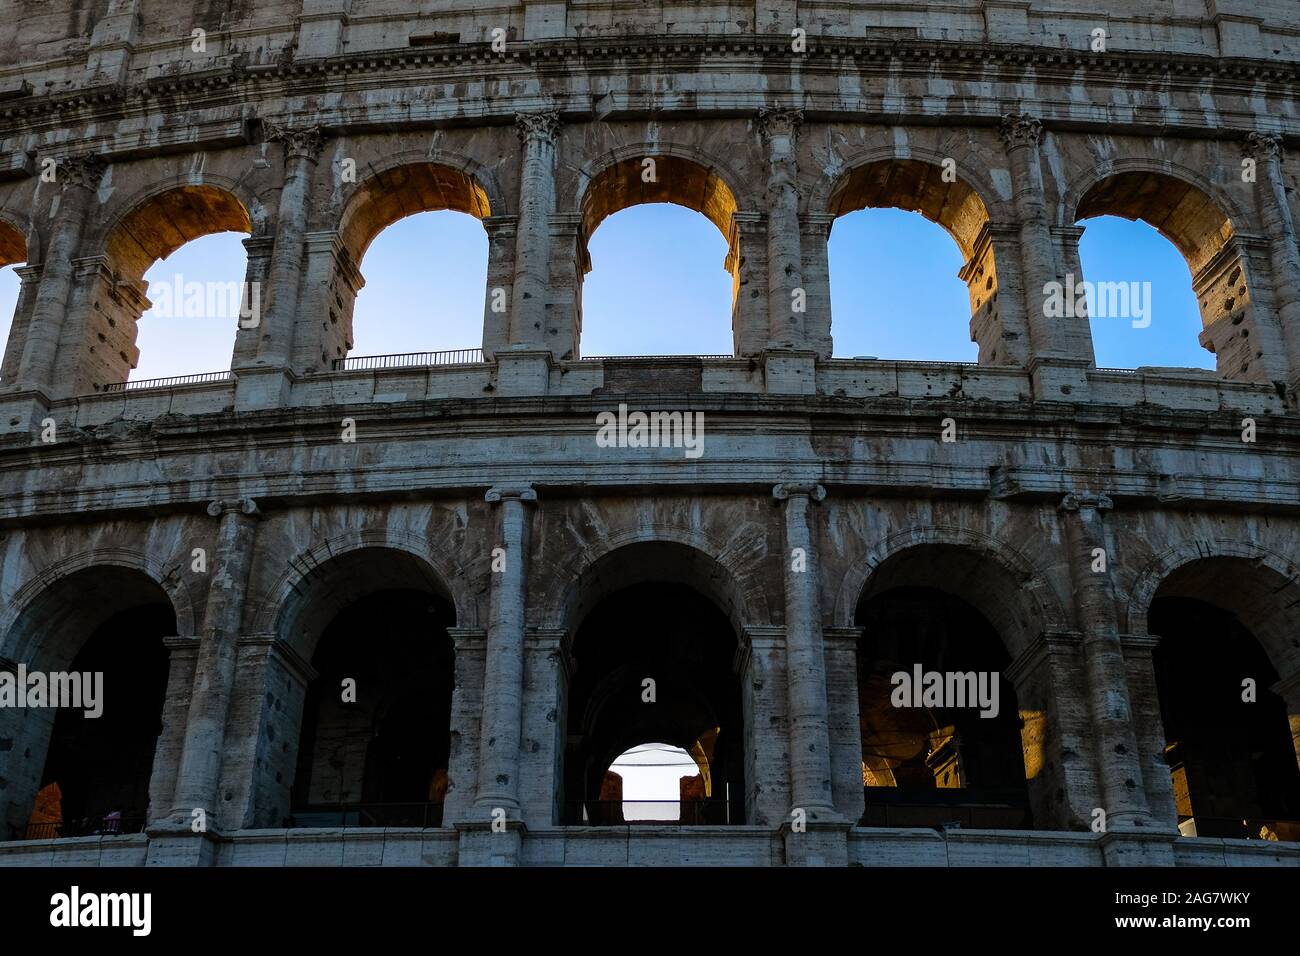 Di età imperiale colosseo architettura facciata oltre il cielo blu e chiaro l'illuminazione,Roma Foto Stock